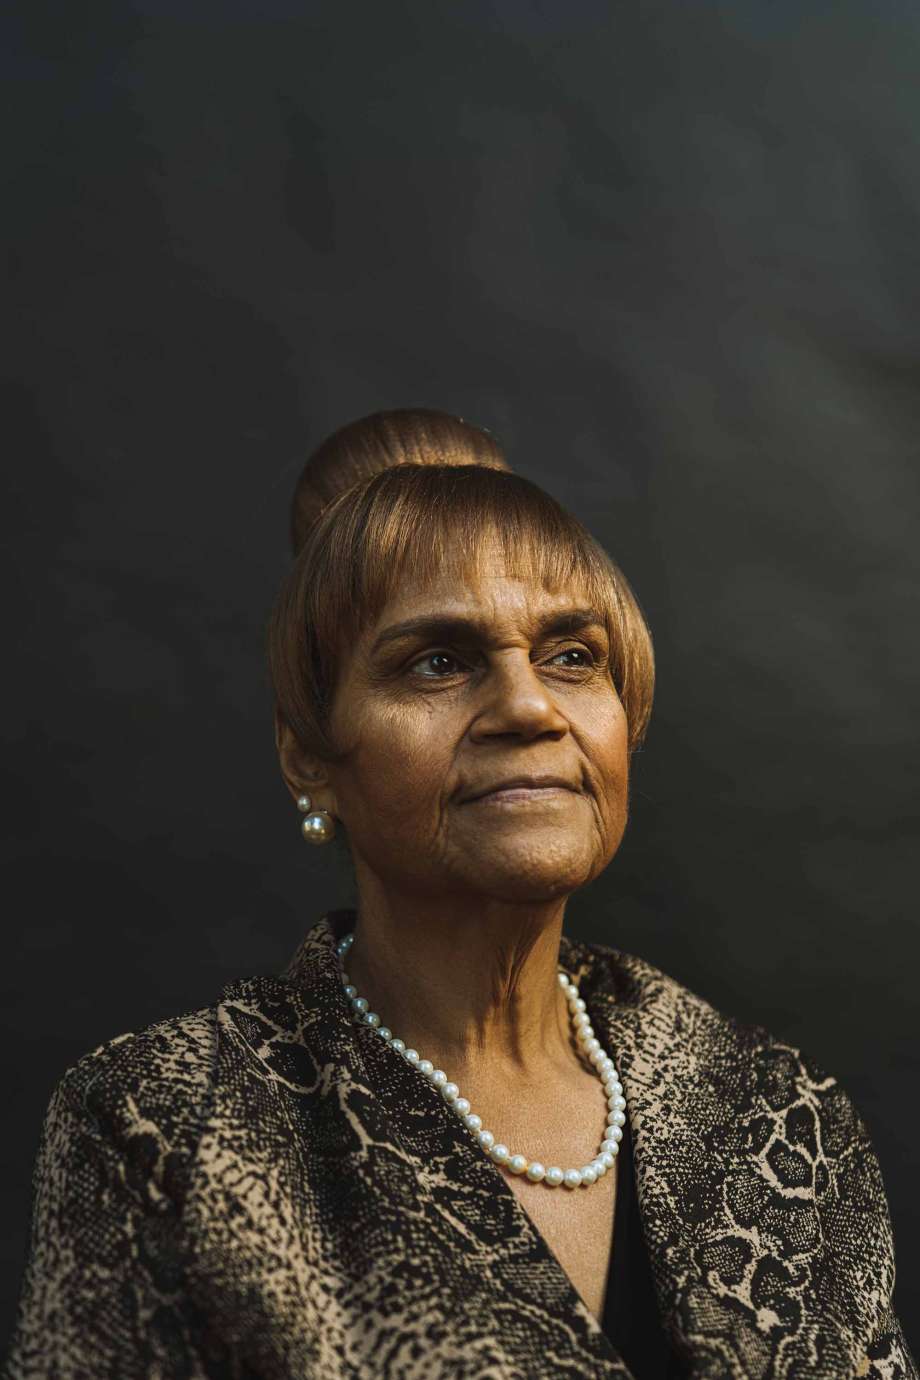 A portrait photograph of Edith Jenkins Debnam